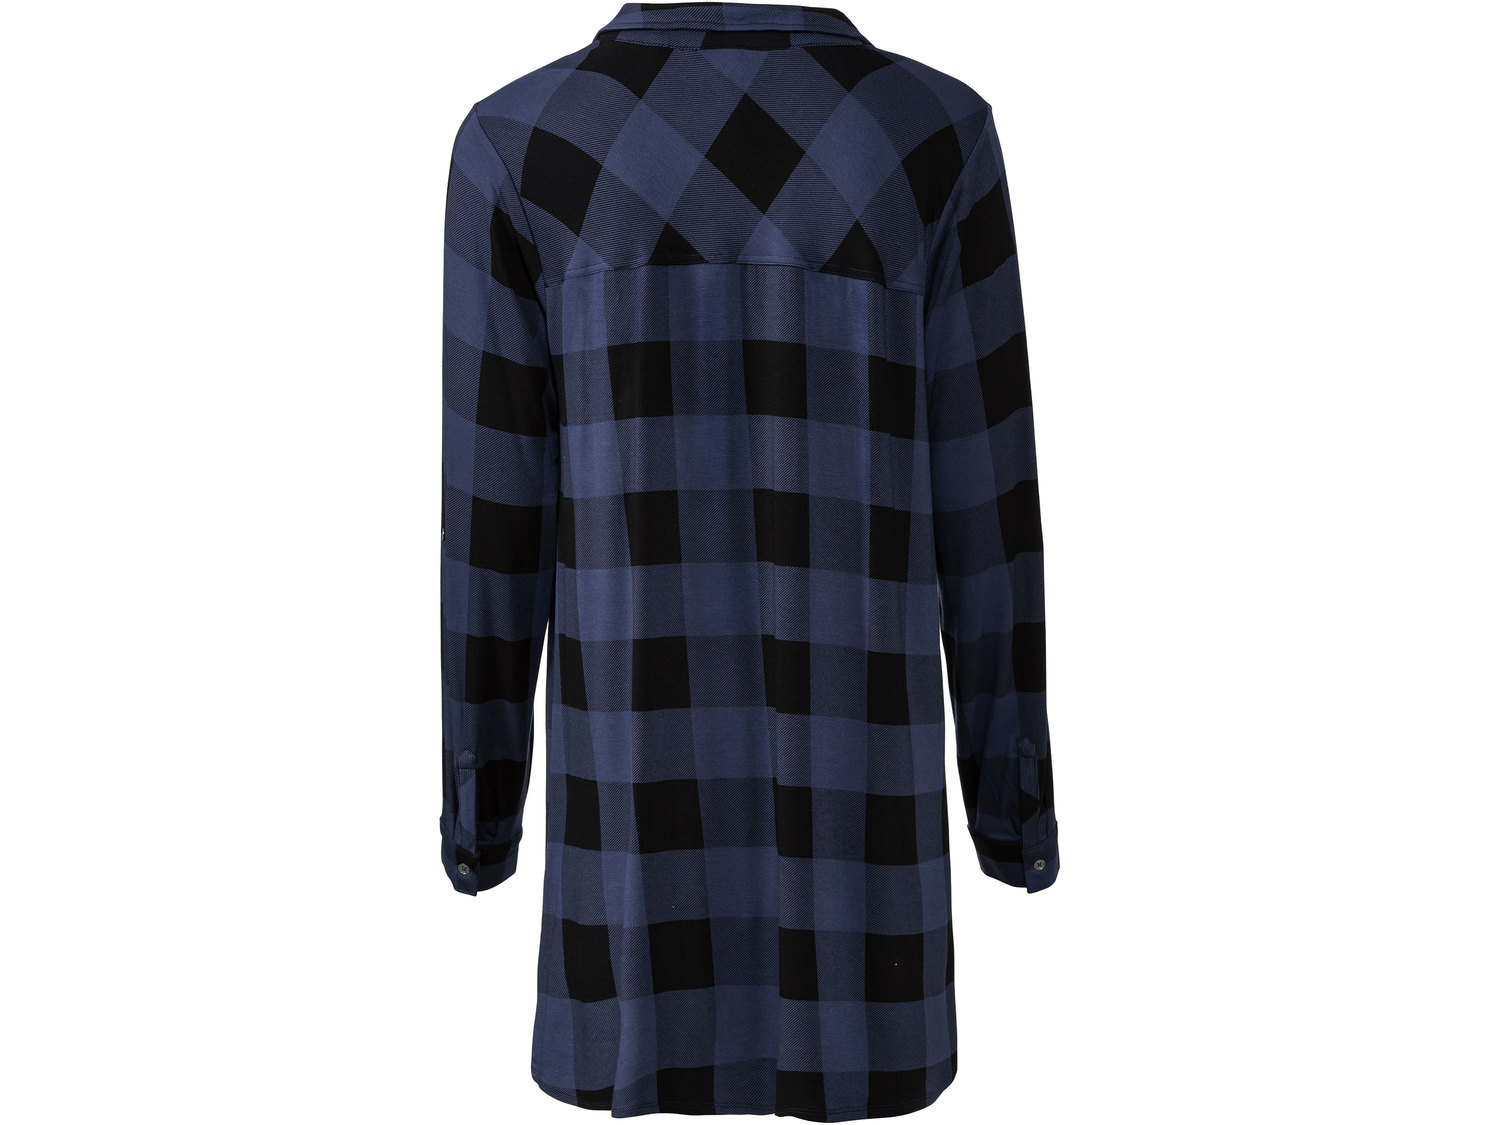 Tunika koszulowa Esmara, cena 39,99 PLN 
- przedłużany tył
- możliwość podpięcia ...